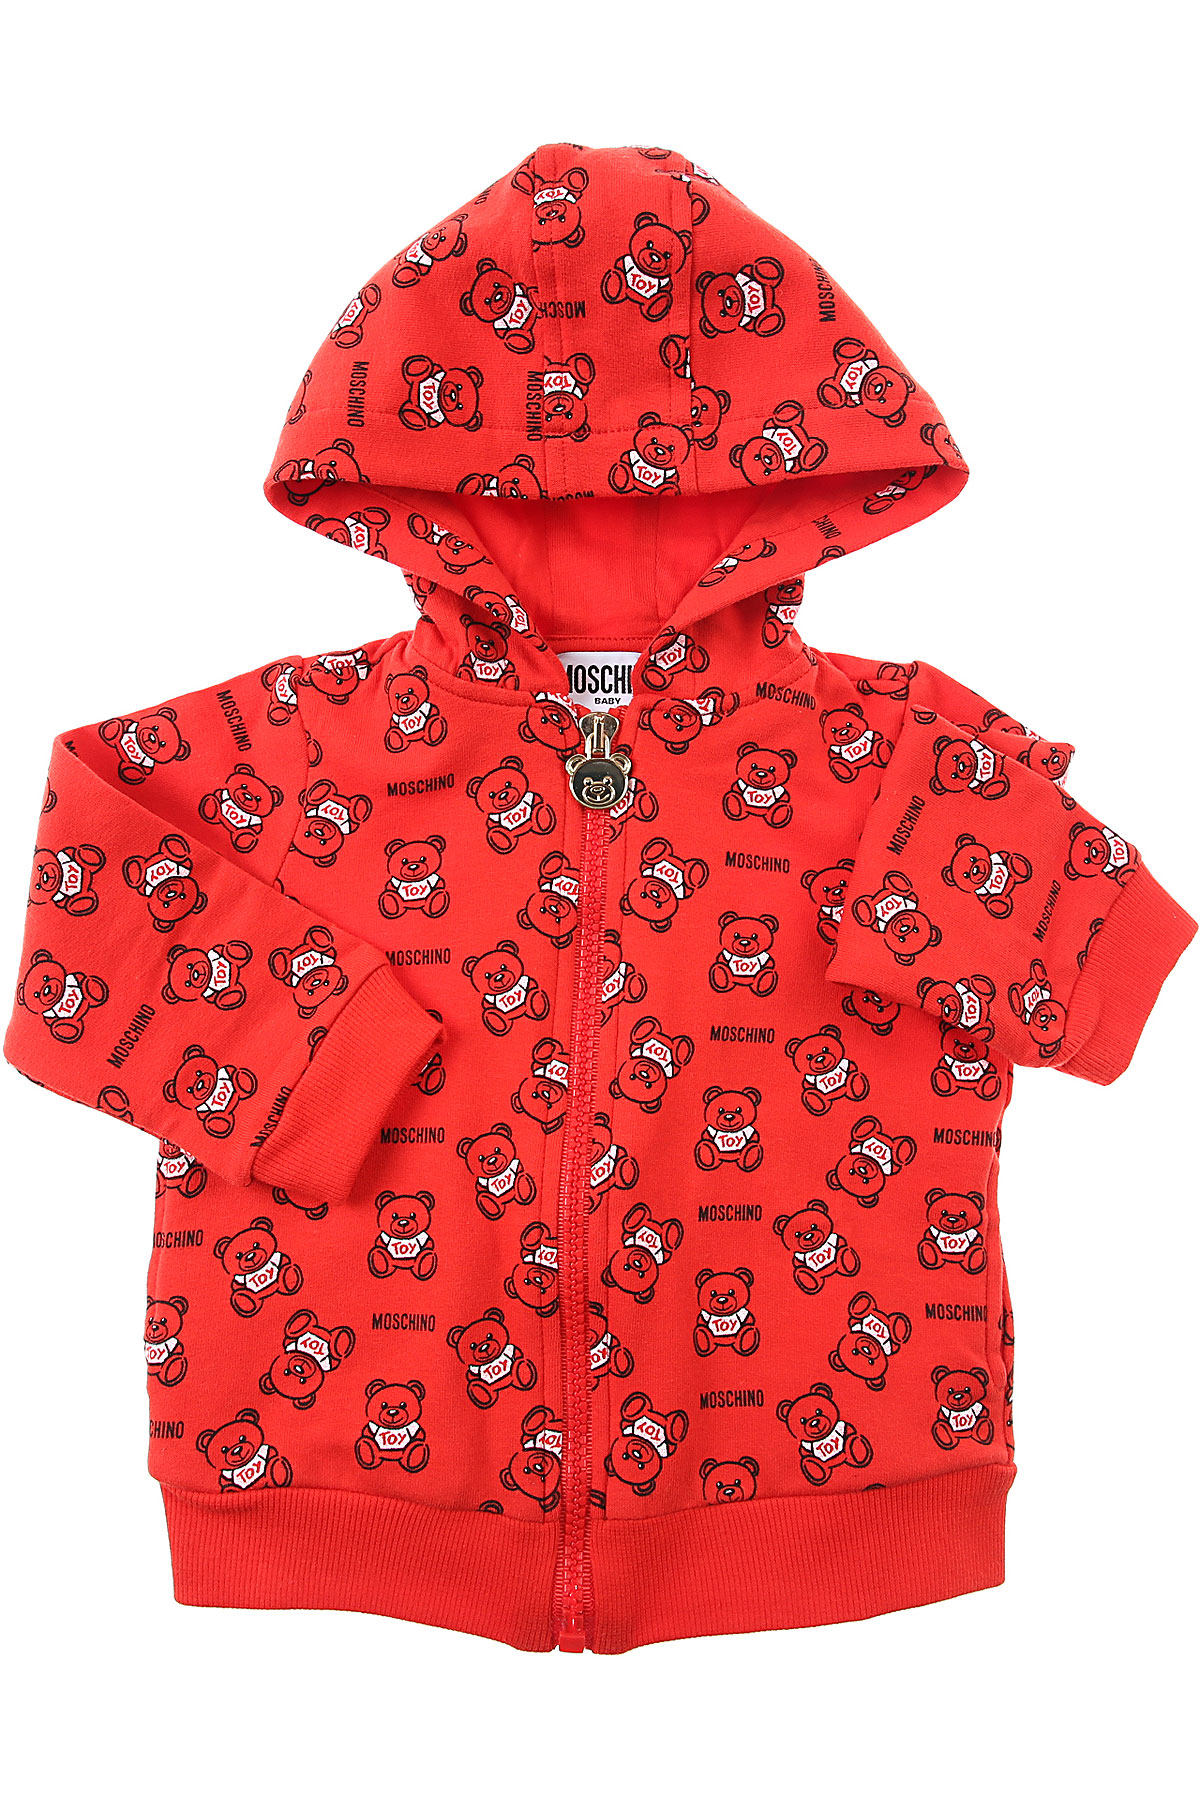 Moschino Baby Sweatshirt & Kapuzenpullover für Jungen Günstig im Sale, Rot, Baumwolle, 2017, 12 M 18M 2Y 3Y 9M